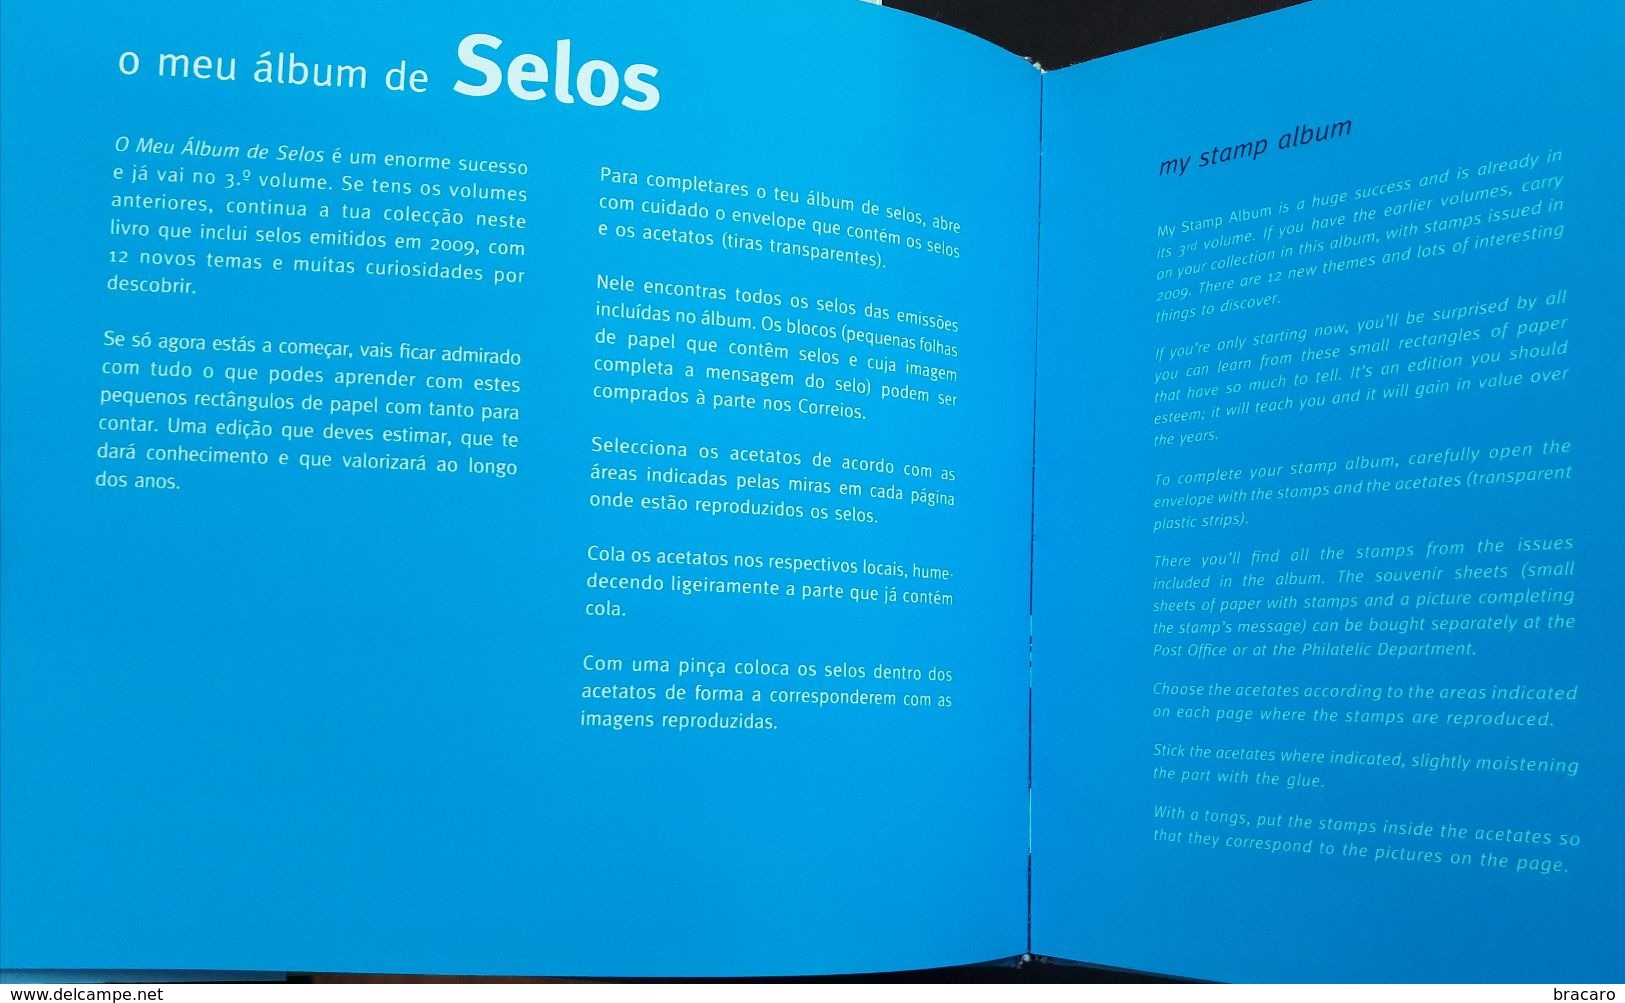 PORTUGAL - O MEU ALBUM DE SELOS / MY STAMP ALBUM - book - includes 47 stamps 2009 MNH